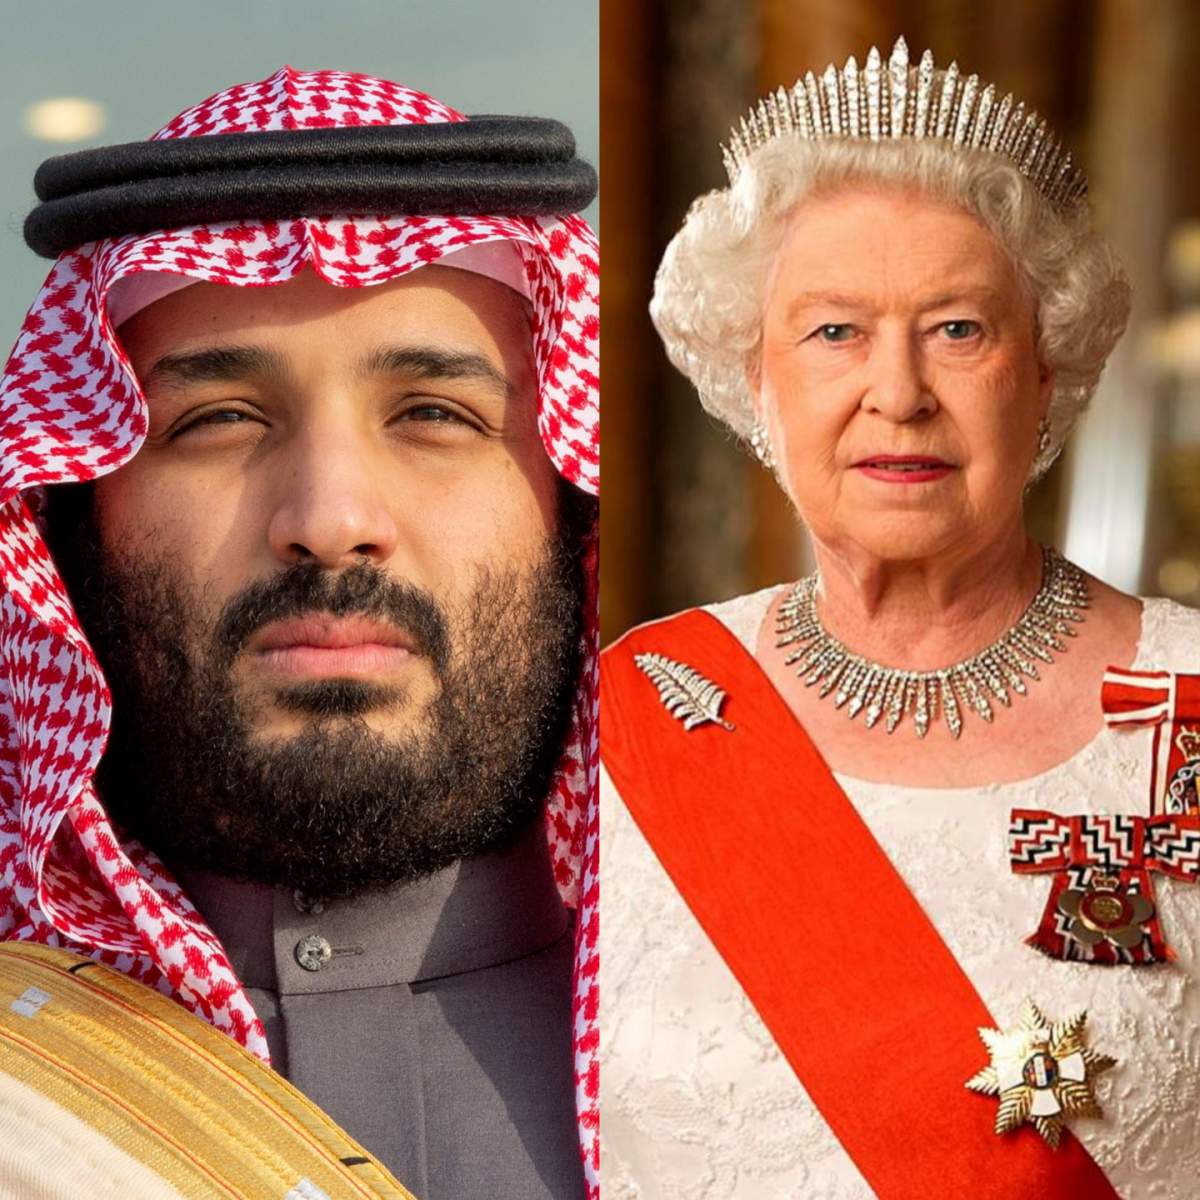 Înmormântarea reginei Elisabeta. Cine este Mohammed bin Salman, controversatul prinț saudit care va lipsi de la eveniment